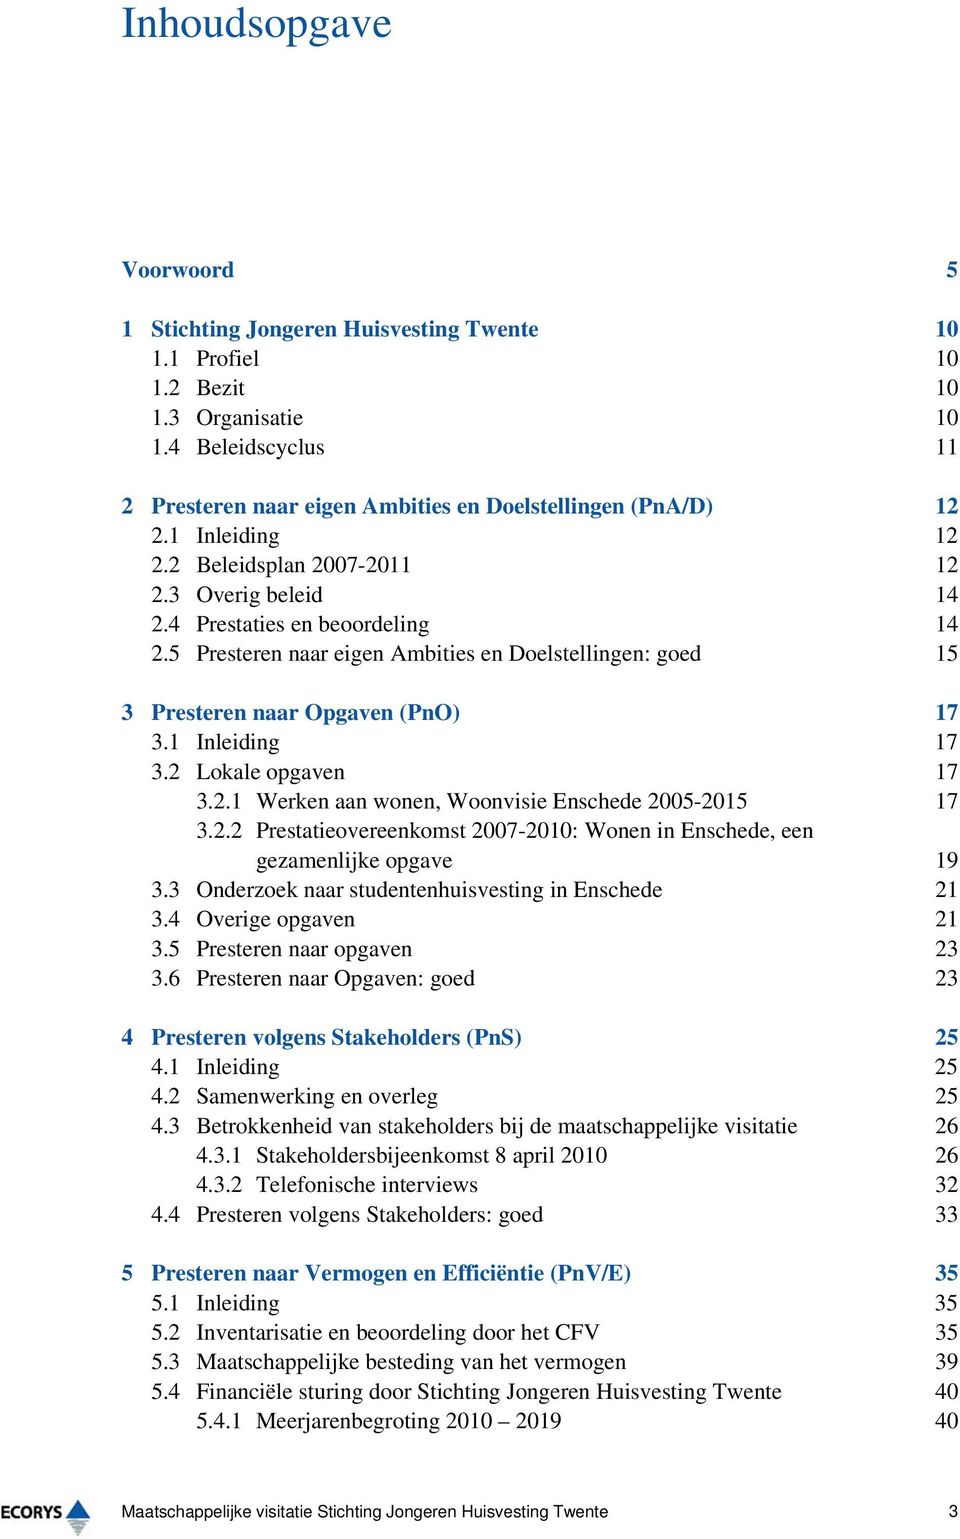 1 Inleiding 17 3.2 Lokale opgaven 17 3.2.1 Werken aan wonen, Woonvisie Enschede 2005-2015 17 3.2.2 Prestatieovereenkomst 2007-2010: Wonen in Enschede, een gezamenlijke opgave 19 3.